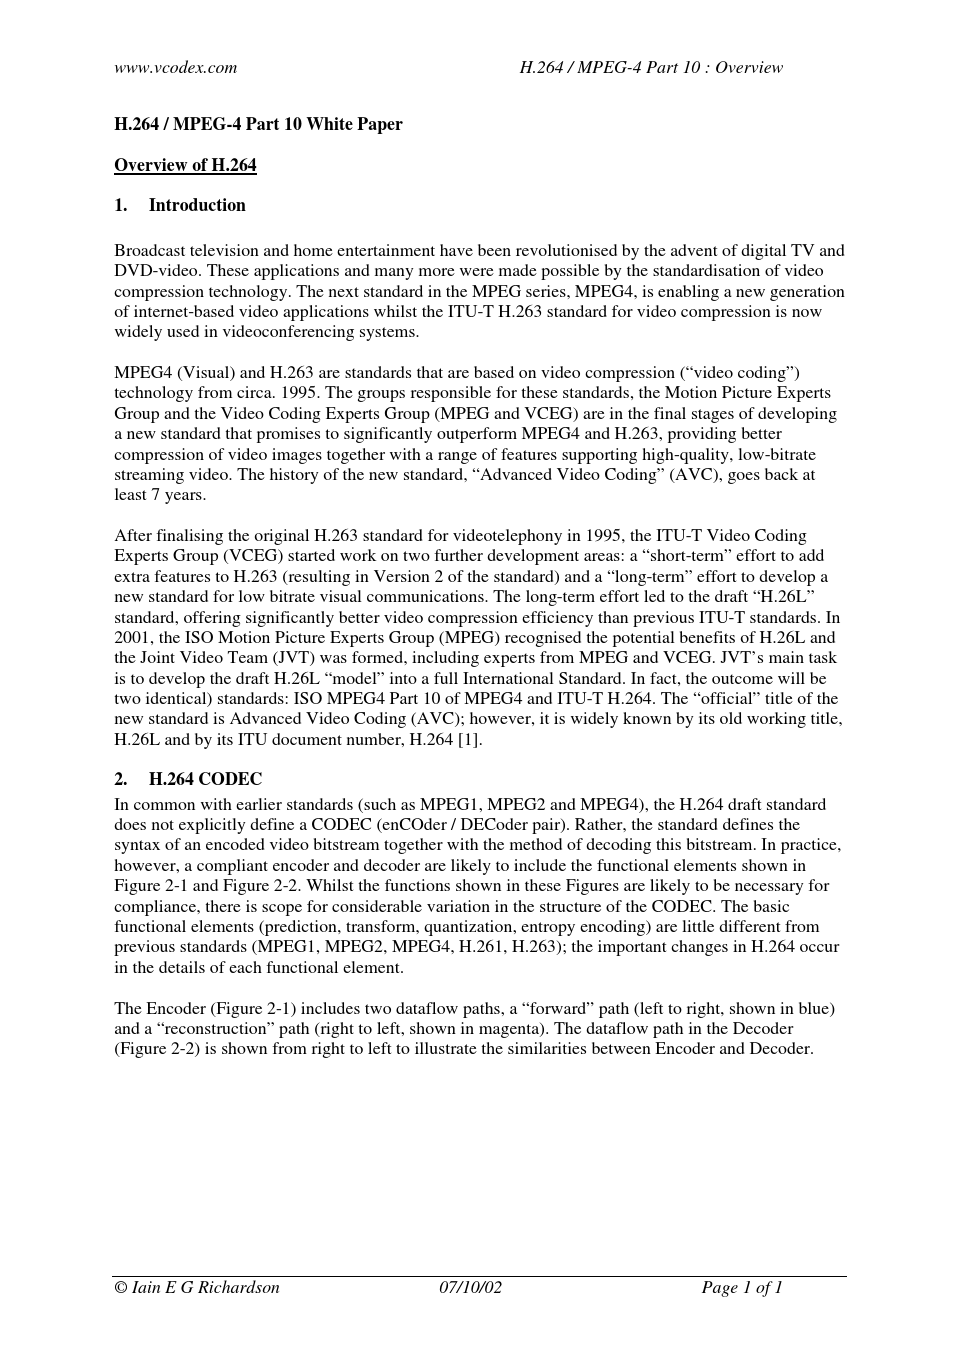 H.264_MPEG-4 Part 10 White Paper